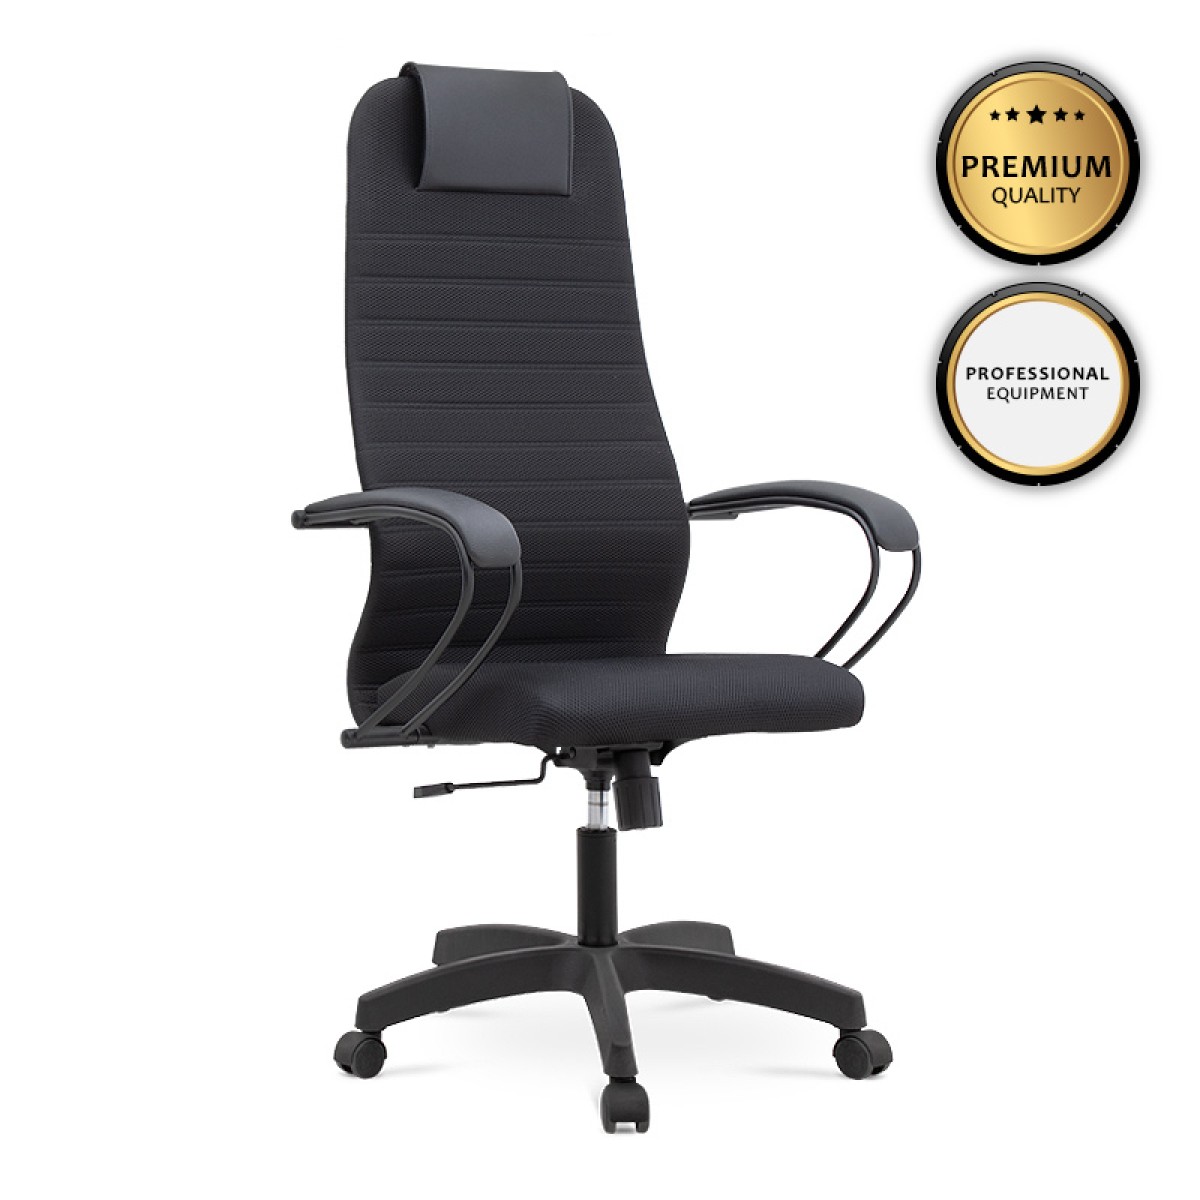 Καρέκλα γραφείου Darkness  με διπλό ύφασμα Mesh χρώμα μαύρο 66,5x70x123/133εκ.